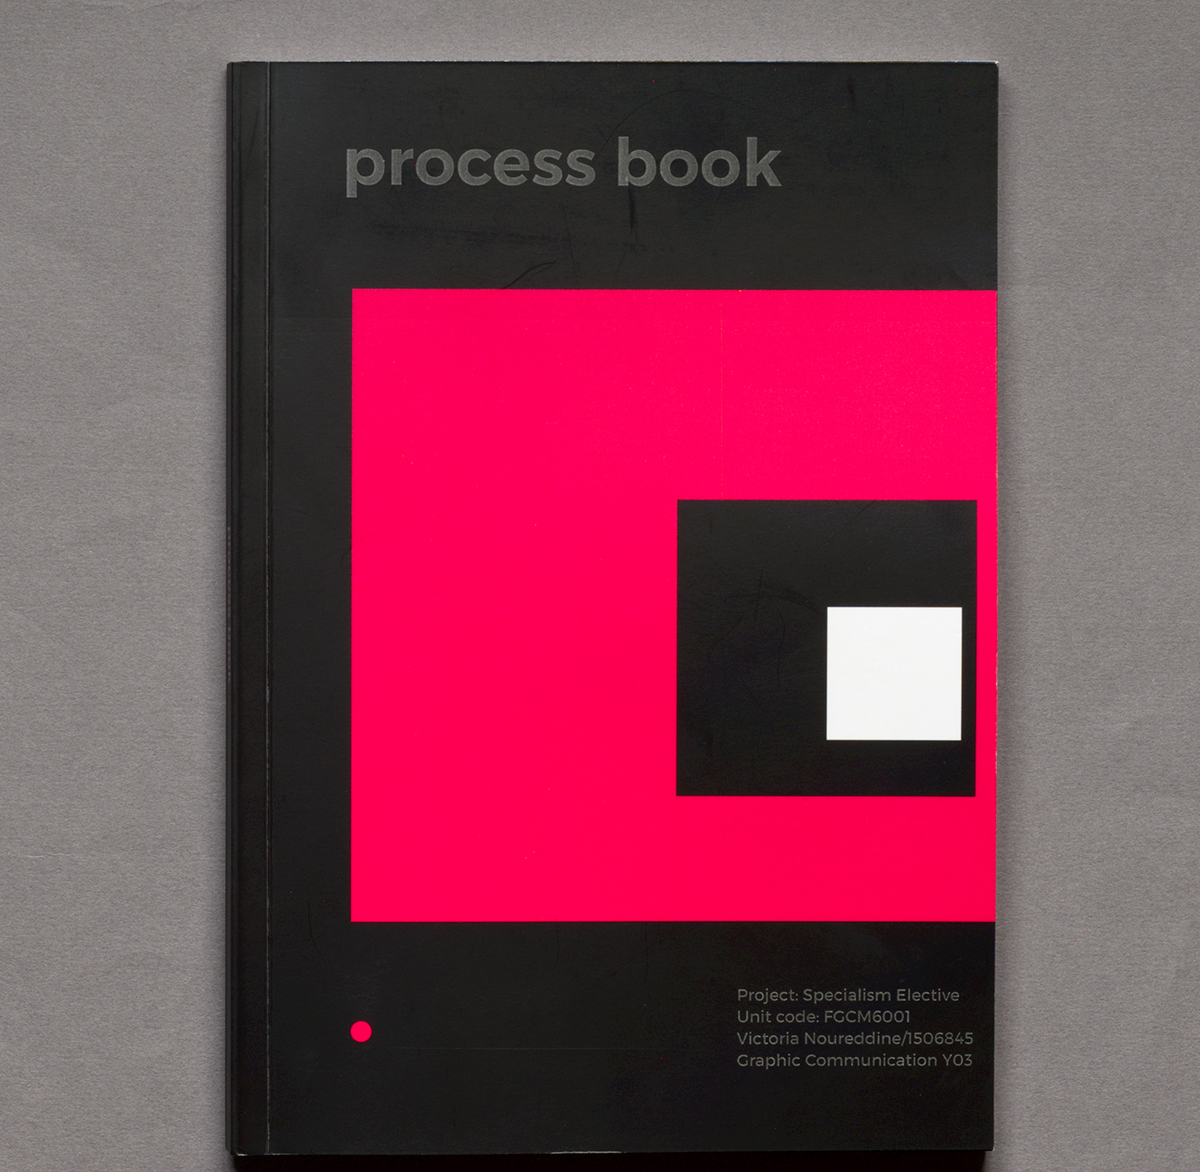 Visual Narrative Process Book project process book visual narrative project Development book